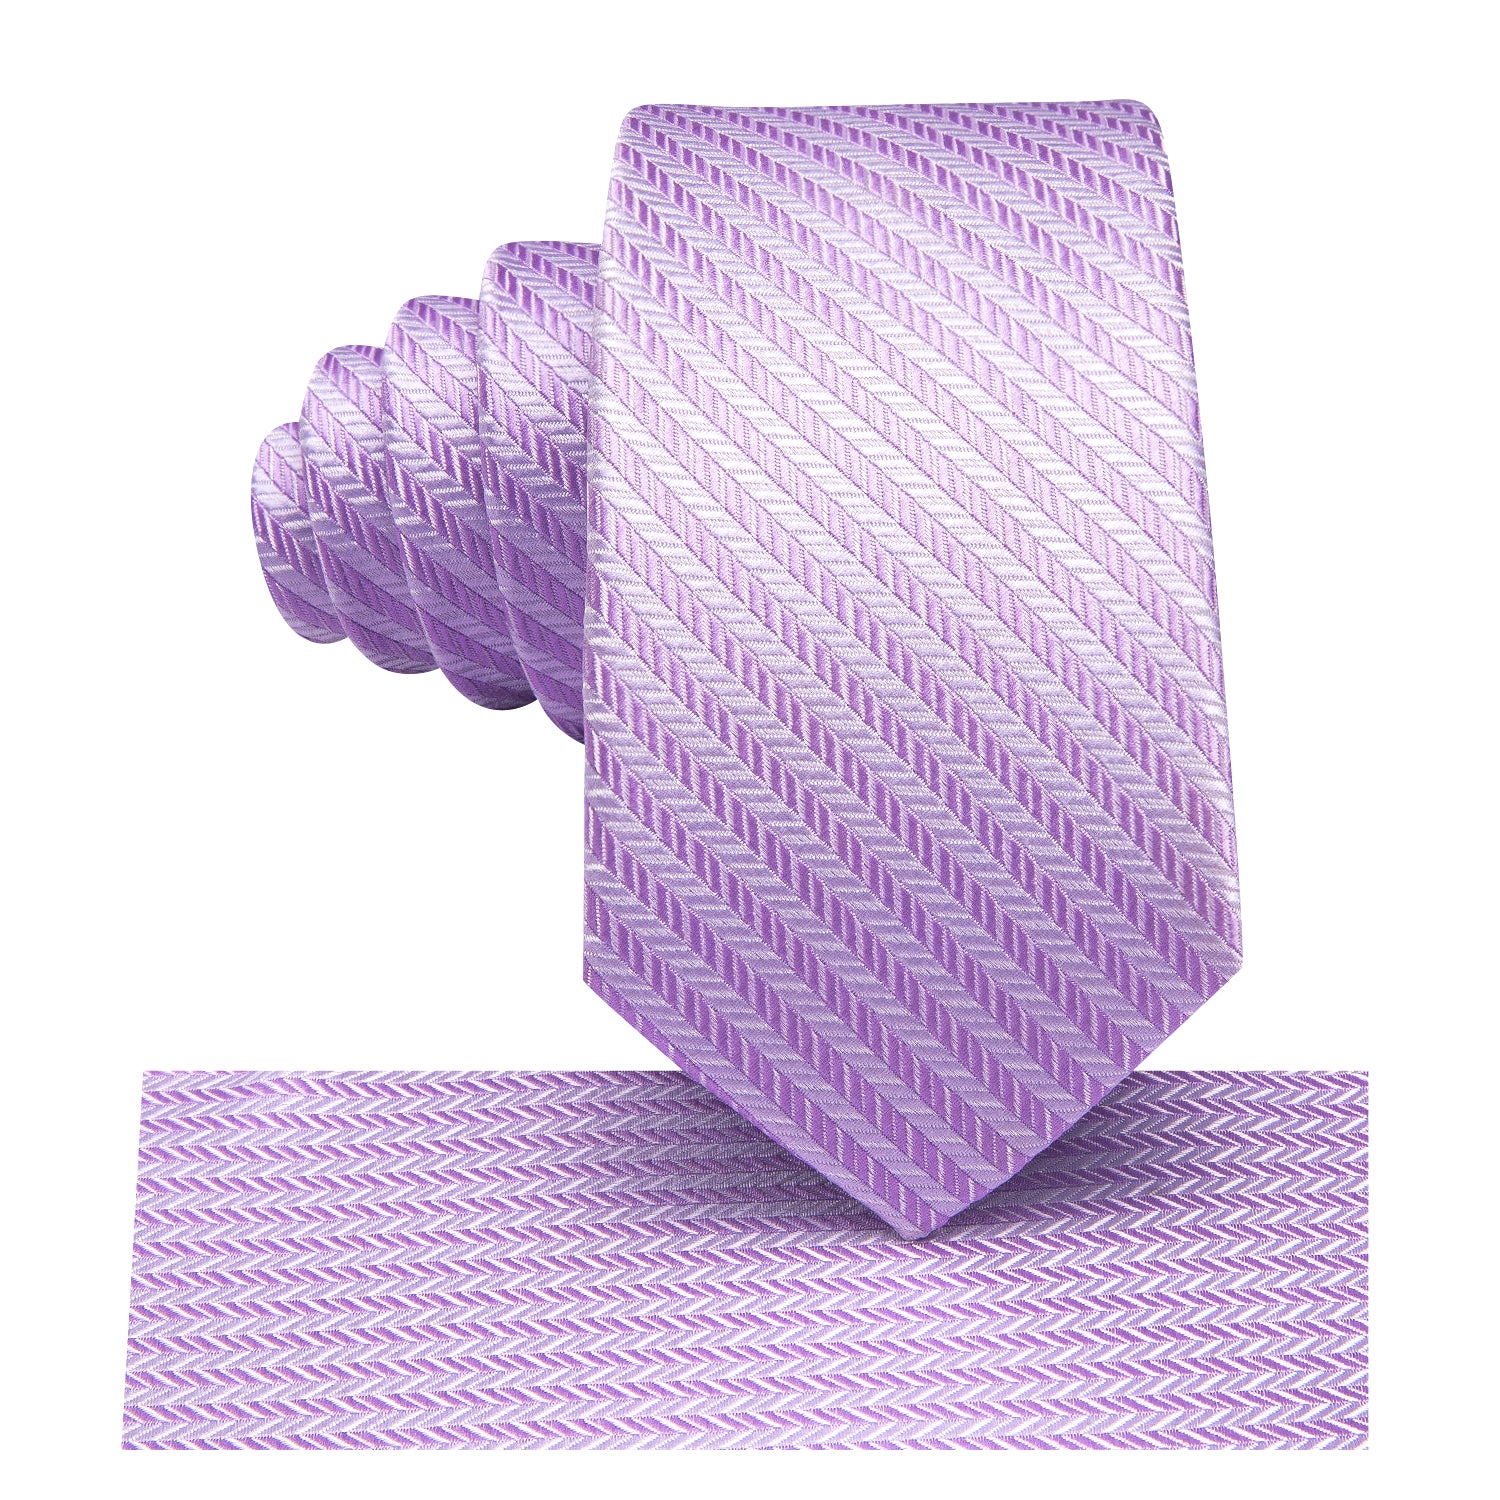 Lilac Purple Striped Children's Tie Pocket Square